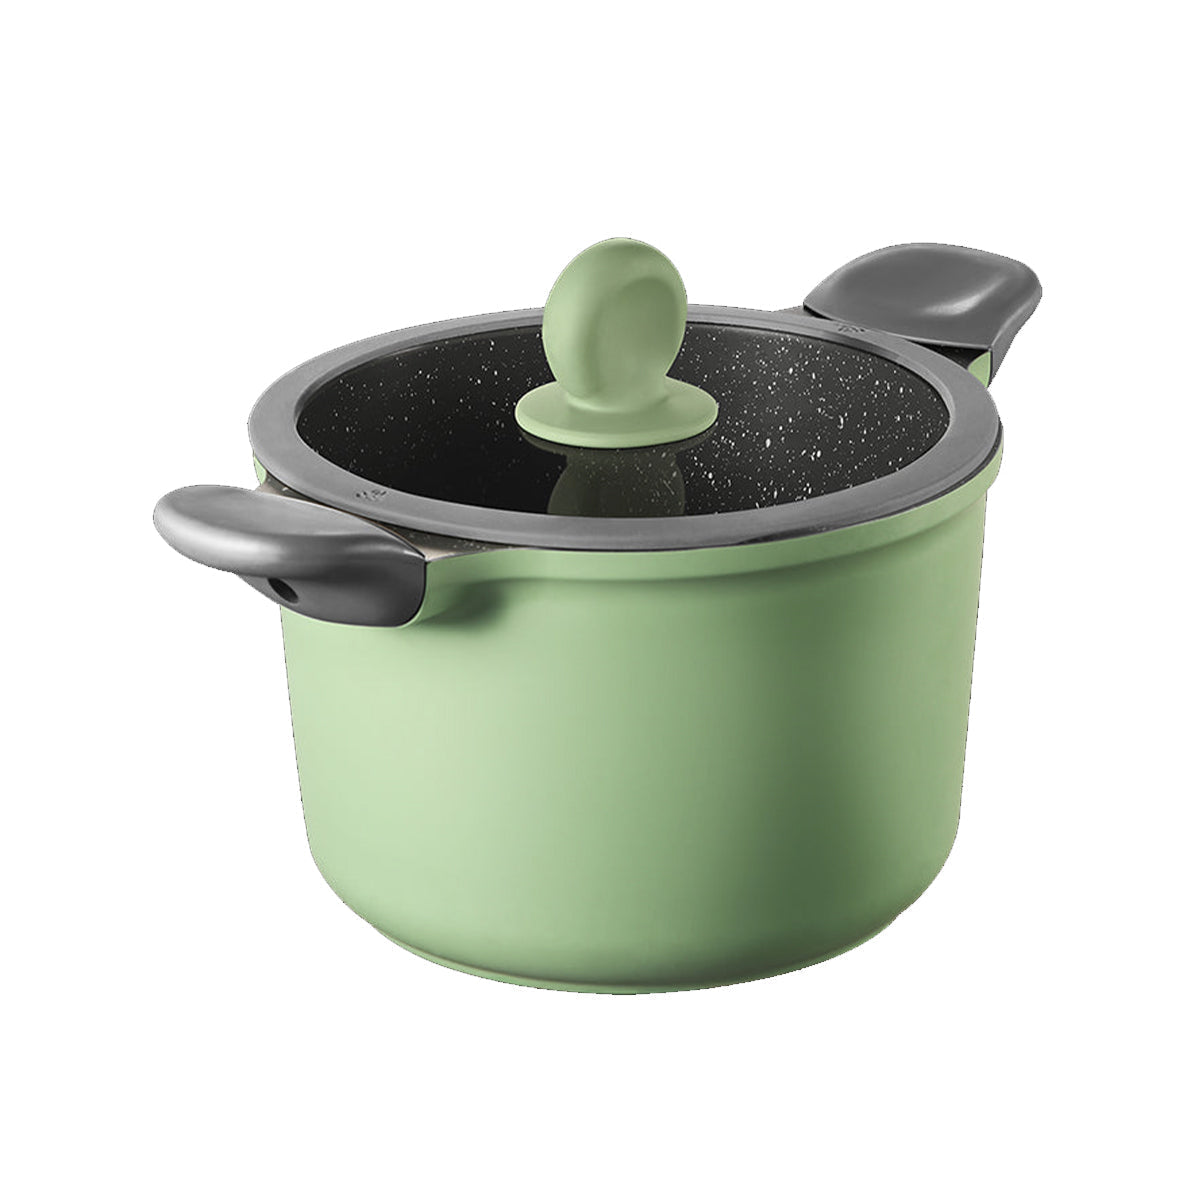 Bright-Green Non-stick Soup Pot